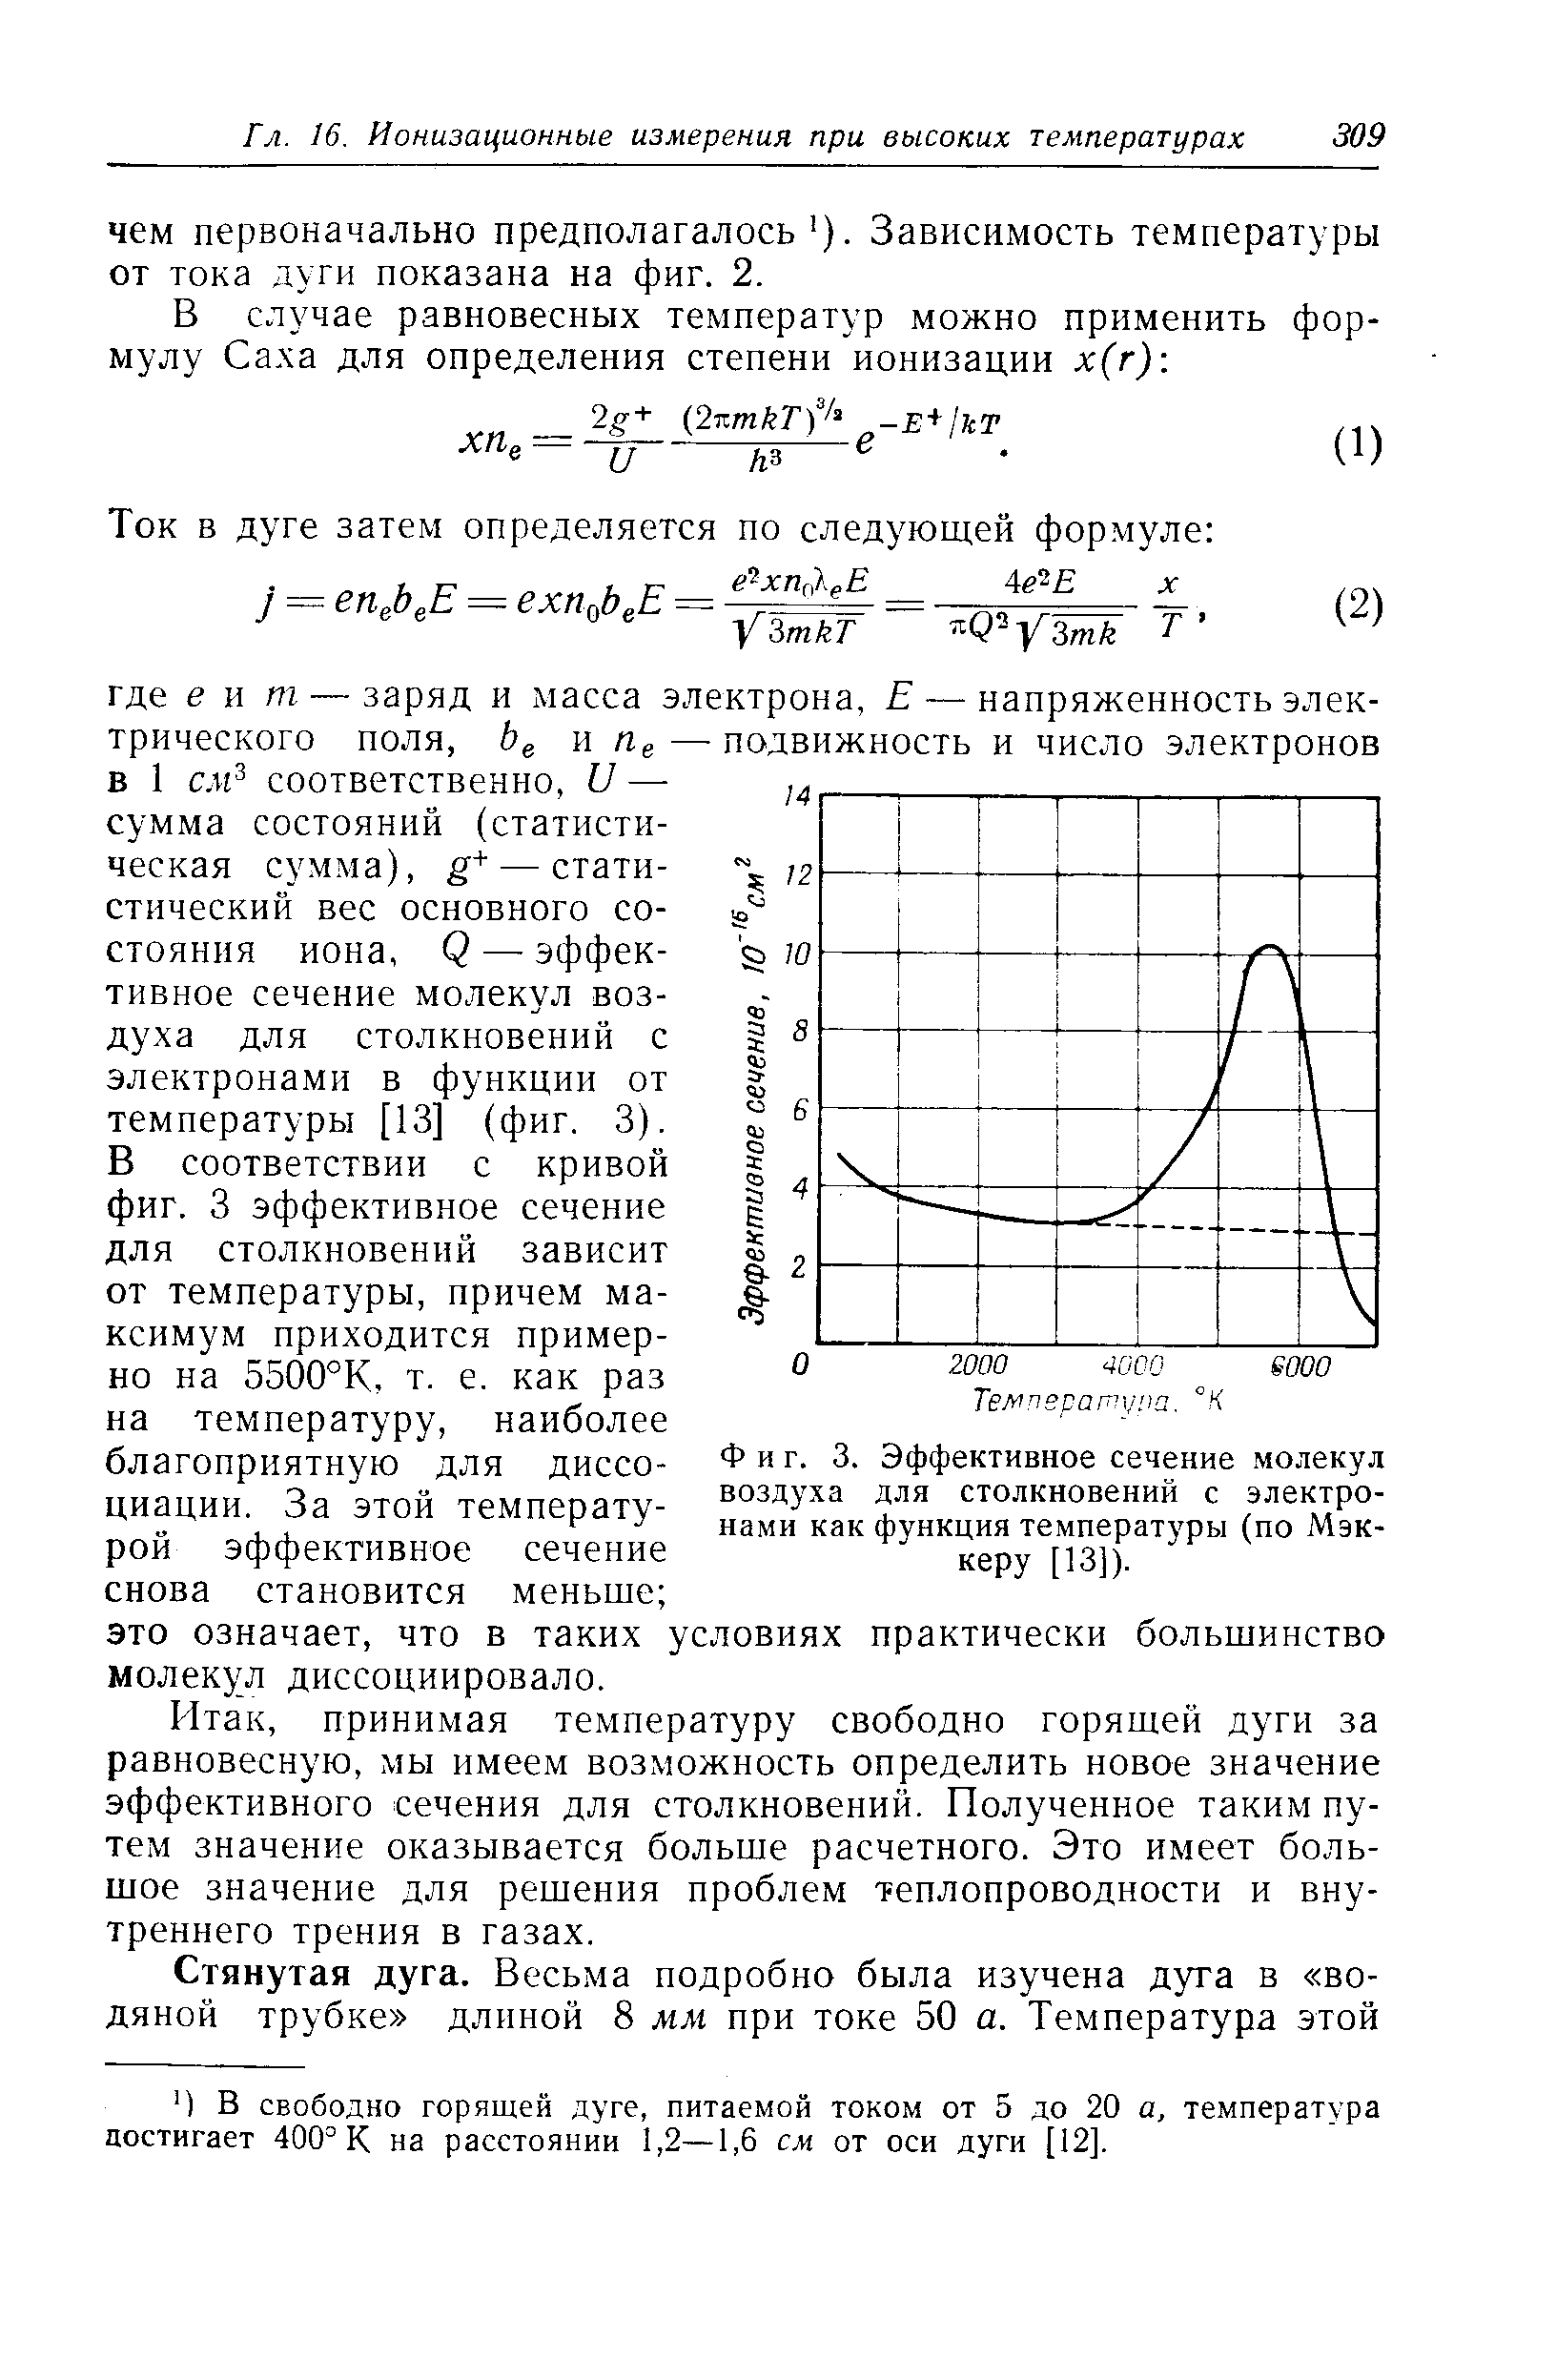 Фиг. 3. Эффективное сечение молекул воздуха для столкновений с электронами как функция температ)фы (по Мэккеру [13]).
